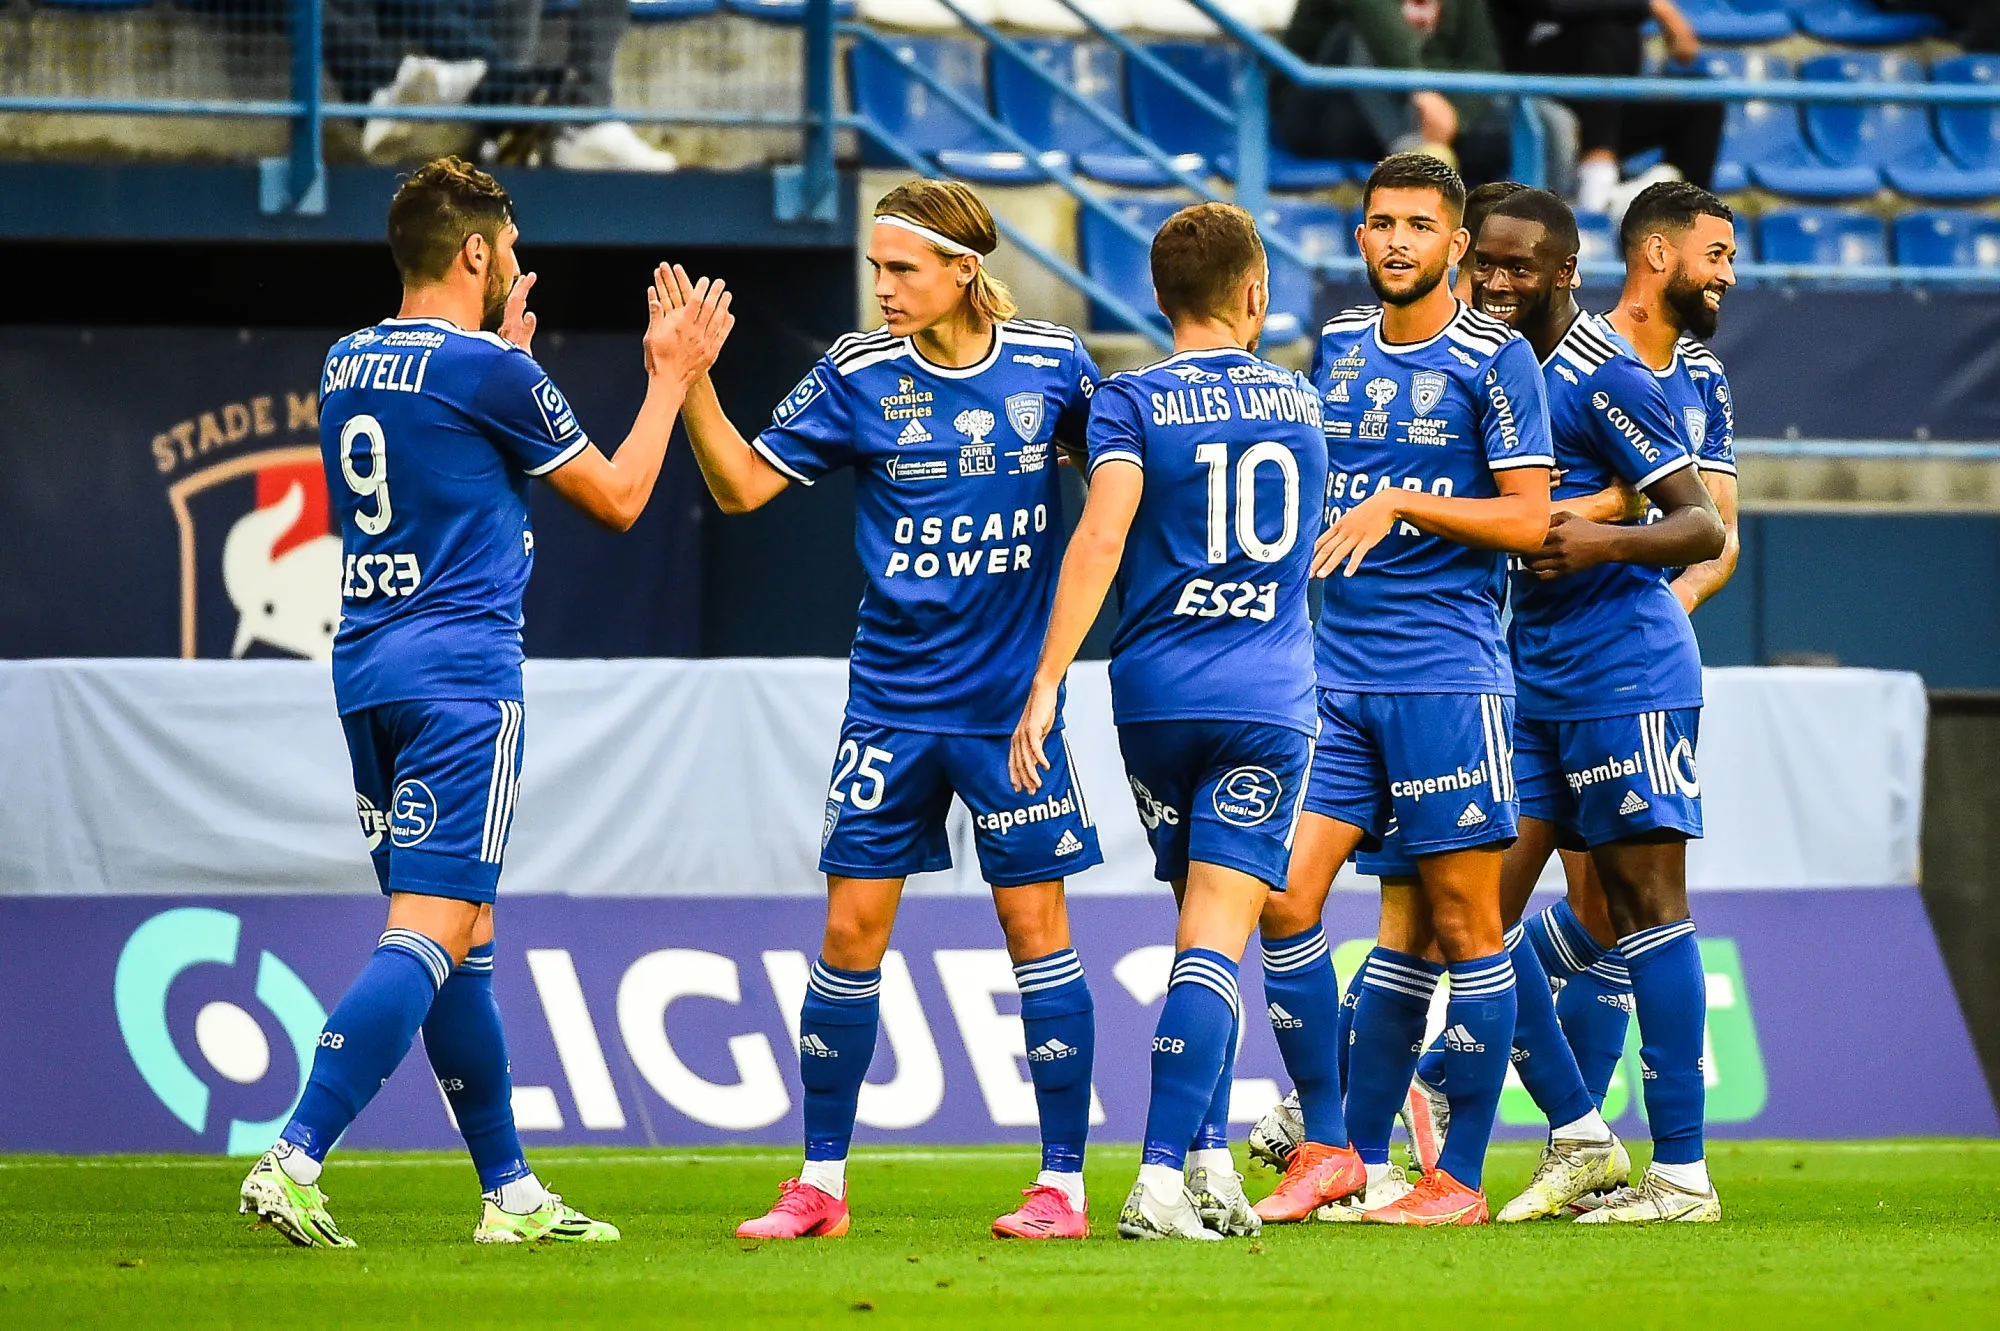 Pronostic Bastia Valenciennes : Analyse, cotes et prono du match de Ligue 2